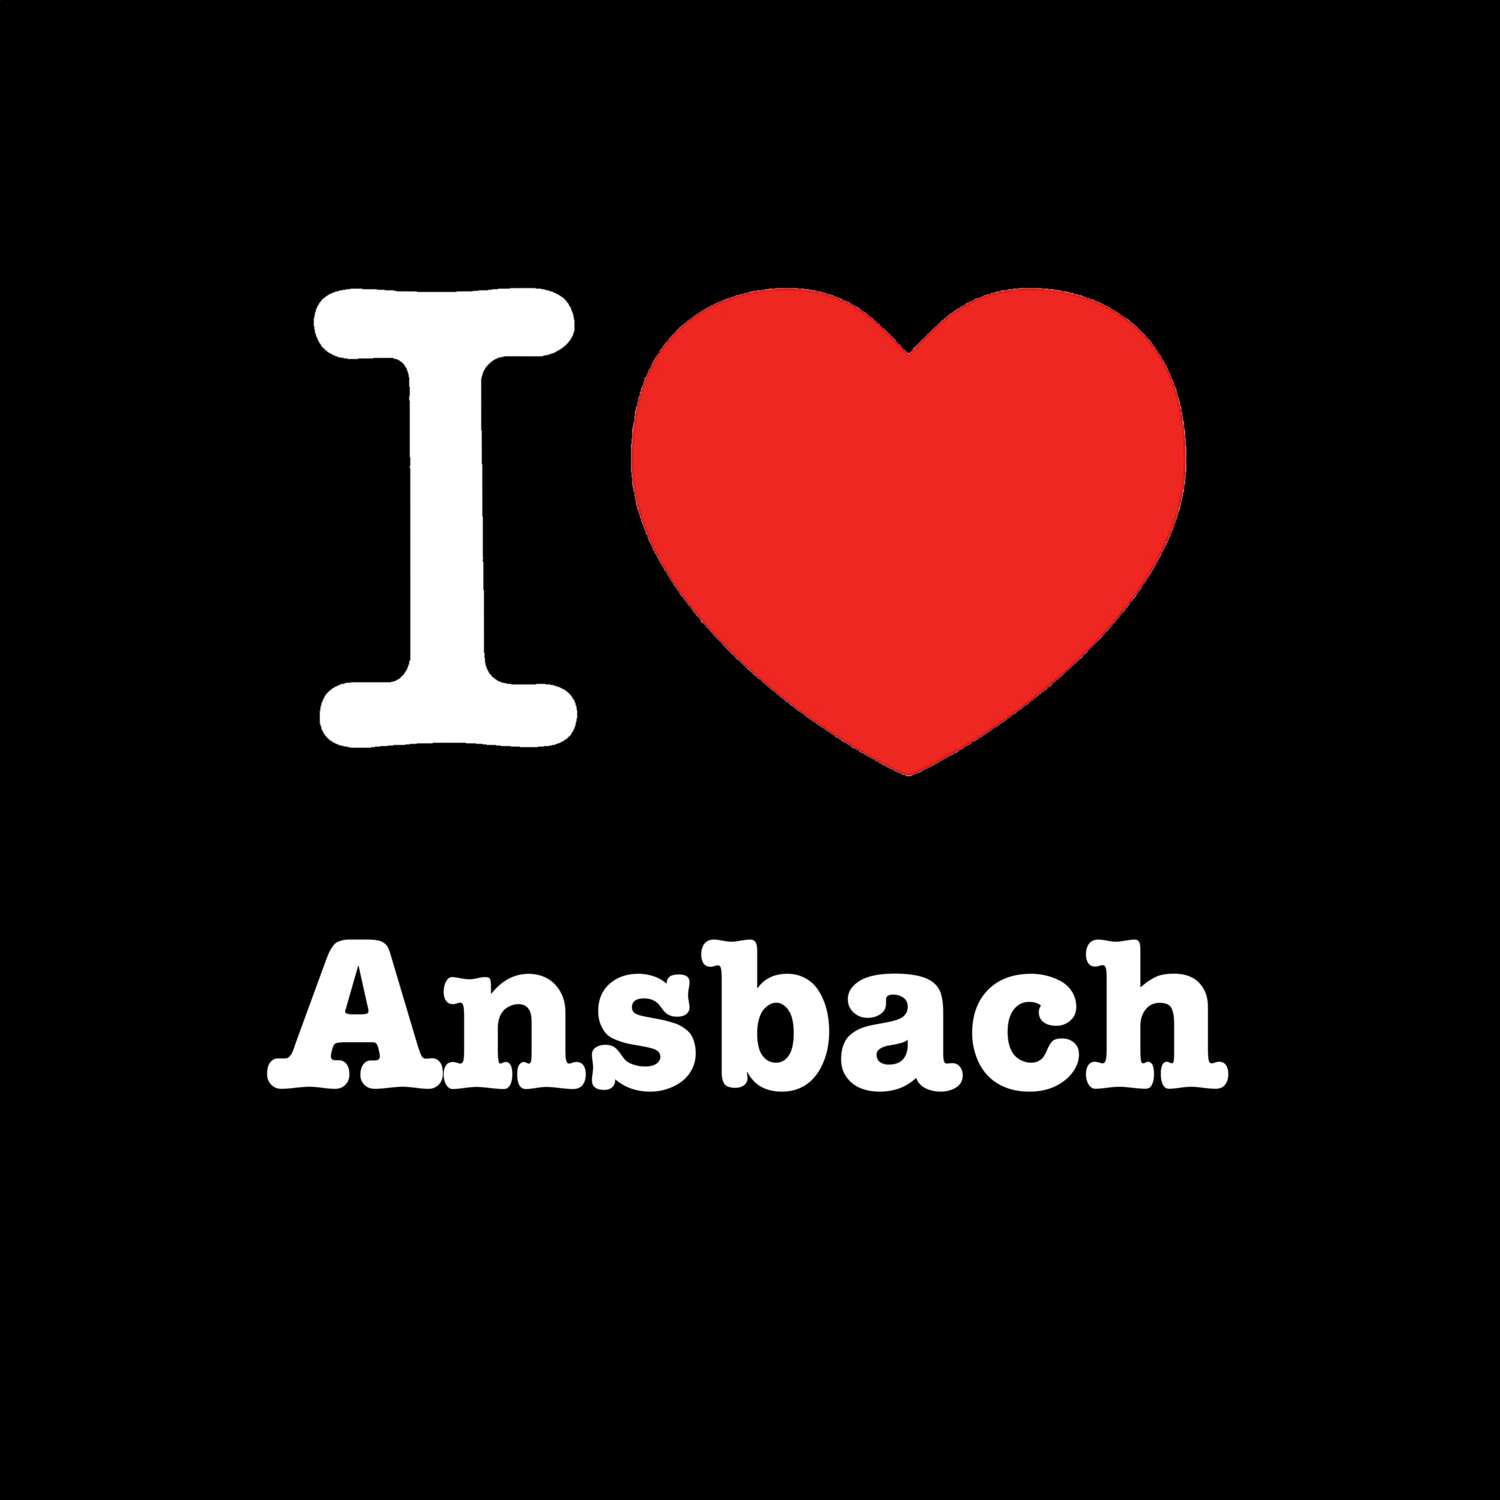 Ansbach T-Shirt »I love«